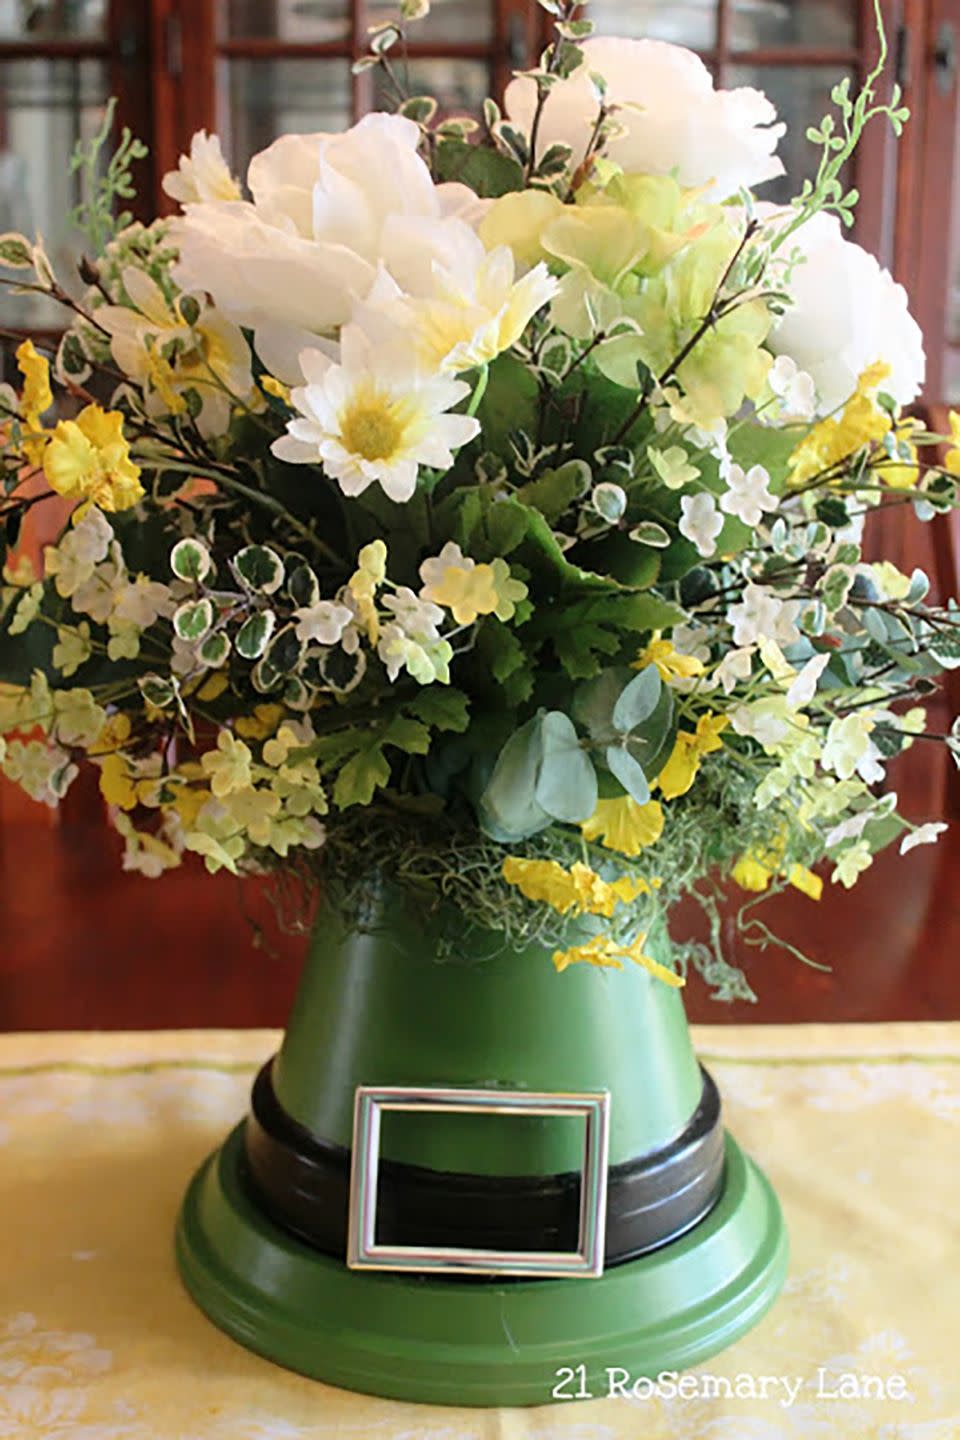 Flower, Floristry, Flower Arranging, Floral design, Bouquet, Cut flowers, Plant, Flowerpot, Vase, Artificial flower, 